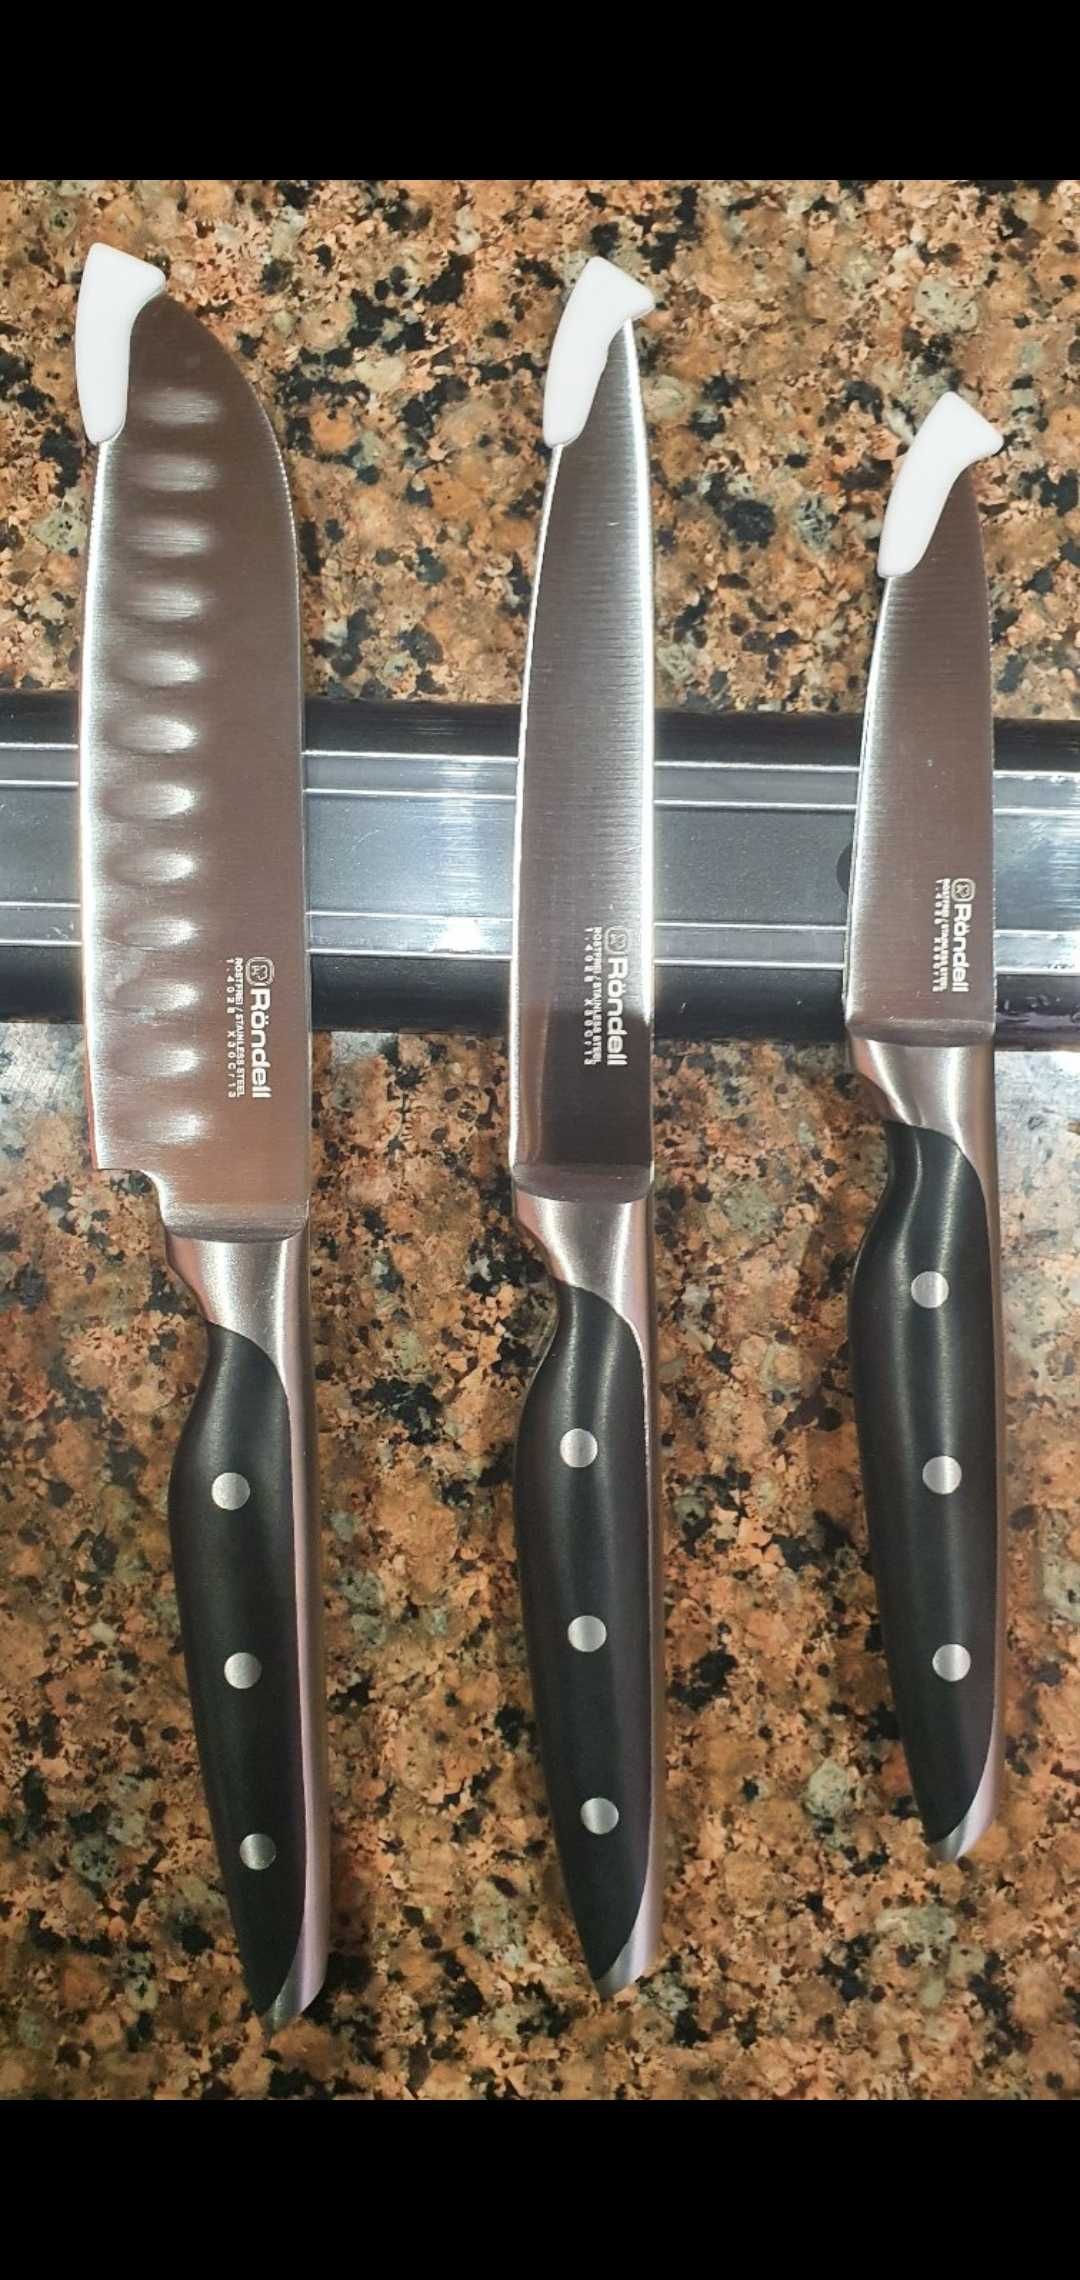 Набір кухонних ножів Rondell Espada 5 предметів (RD-324)